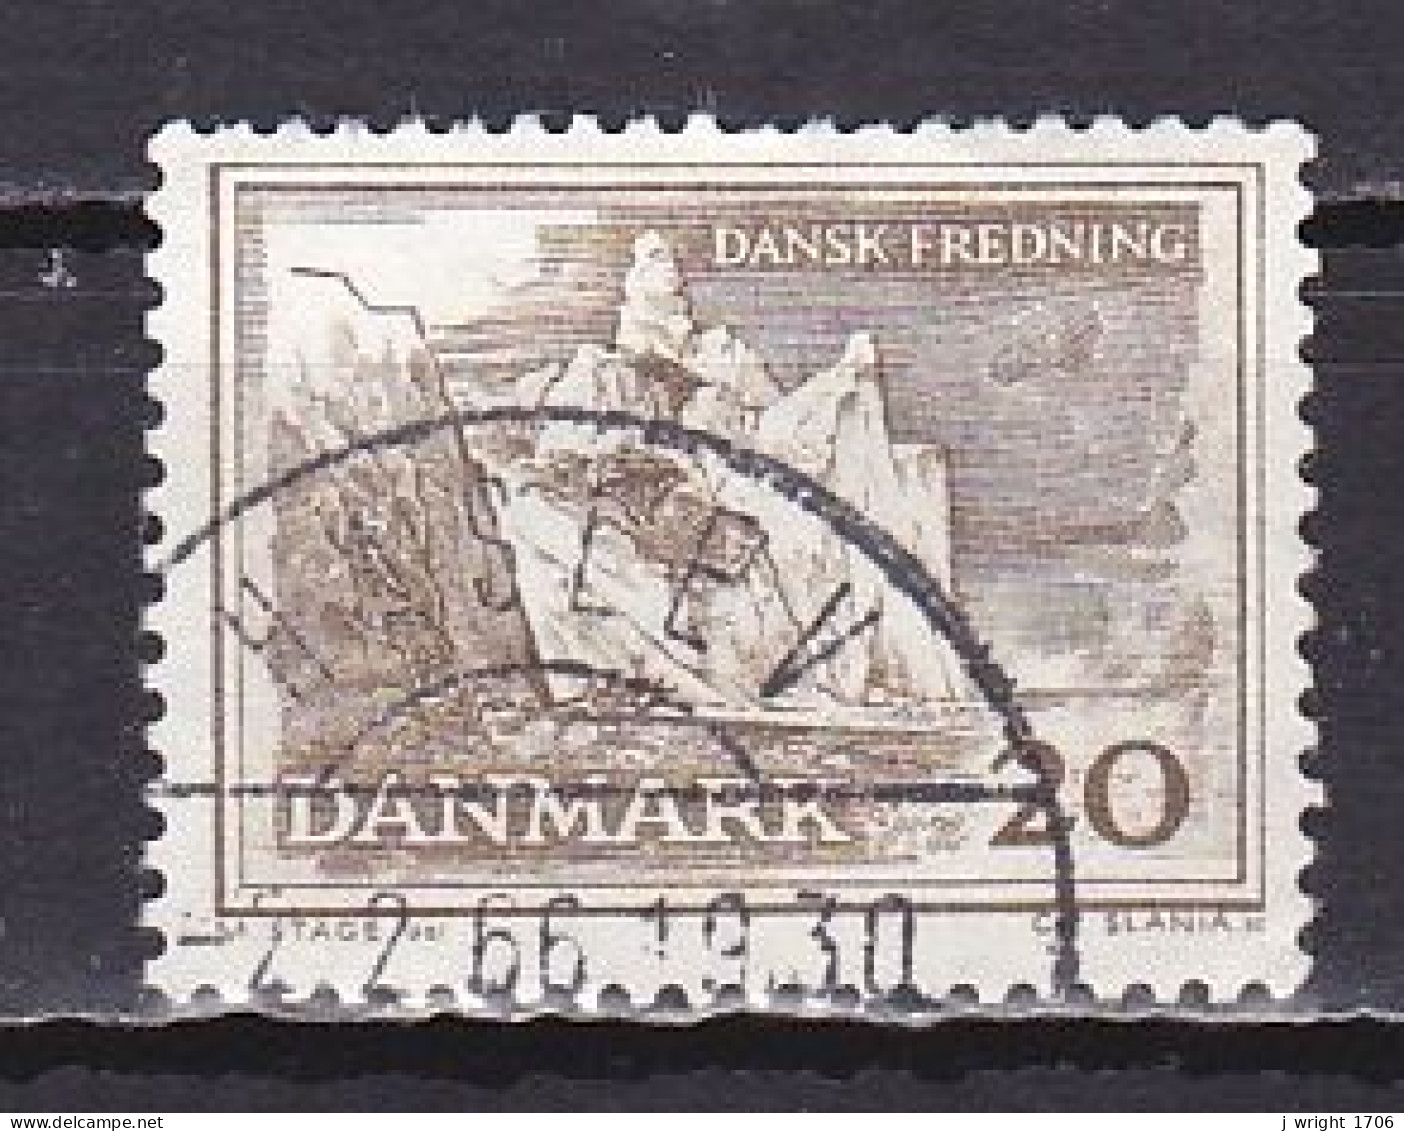 Denmark, 1962, Natural Preservation/Møn Cliffs, 20ø, USED - Usado